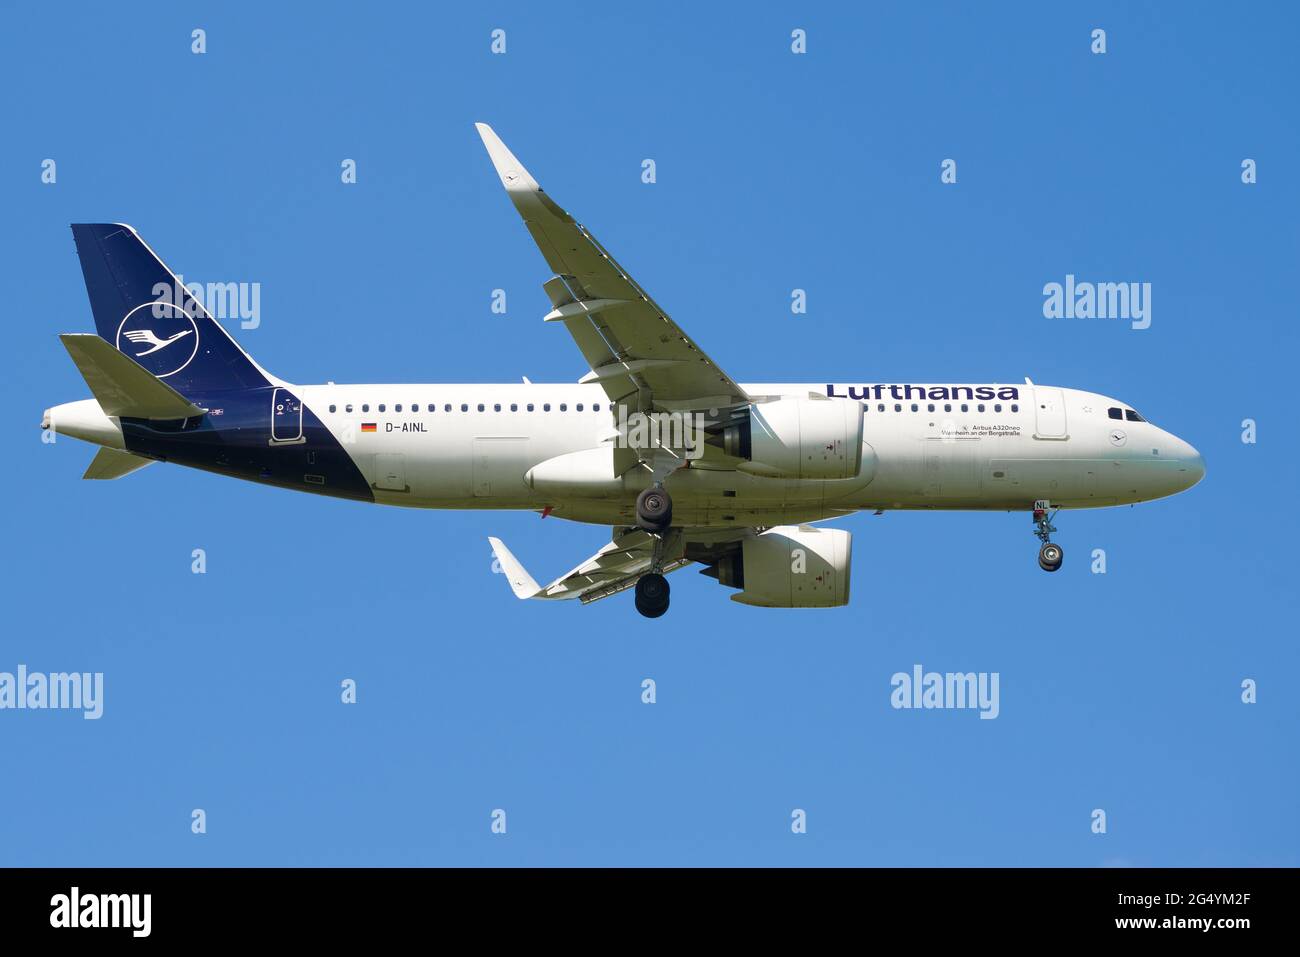 SANKT PETERSBURG, RUSSLAND - 29. MAI 2021: Airbus A320neo (D-AILN) der Lufthansa Airlines auf dem Gleitschirmweg. Profilansicht Stockfoto